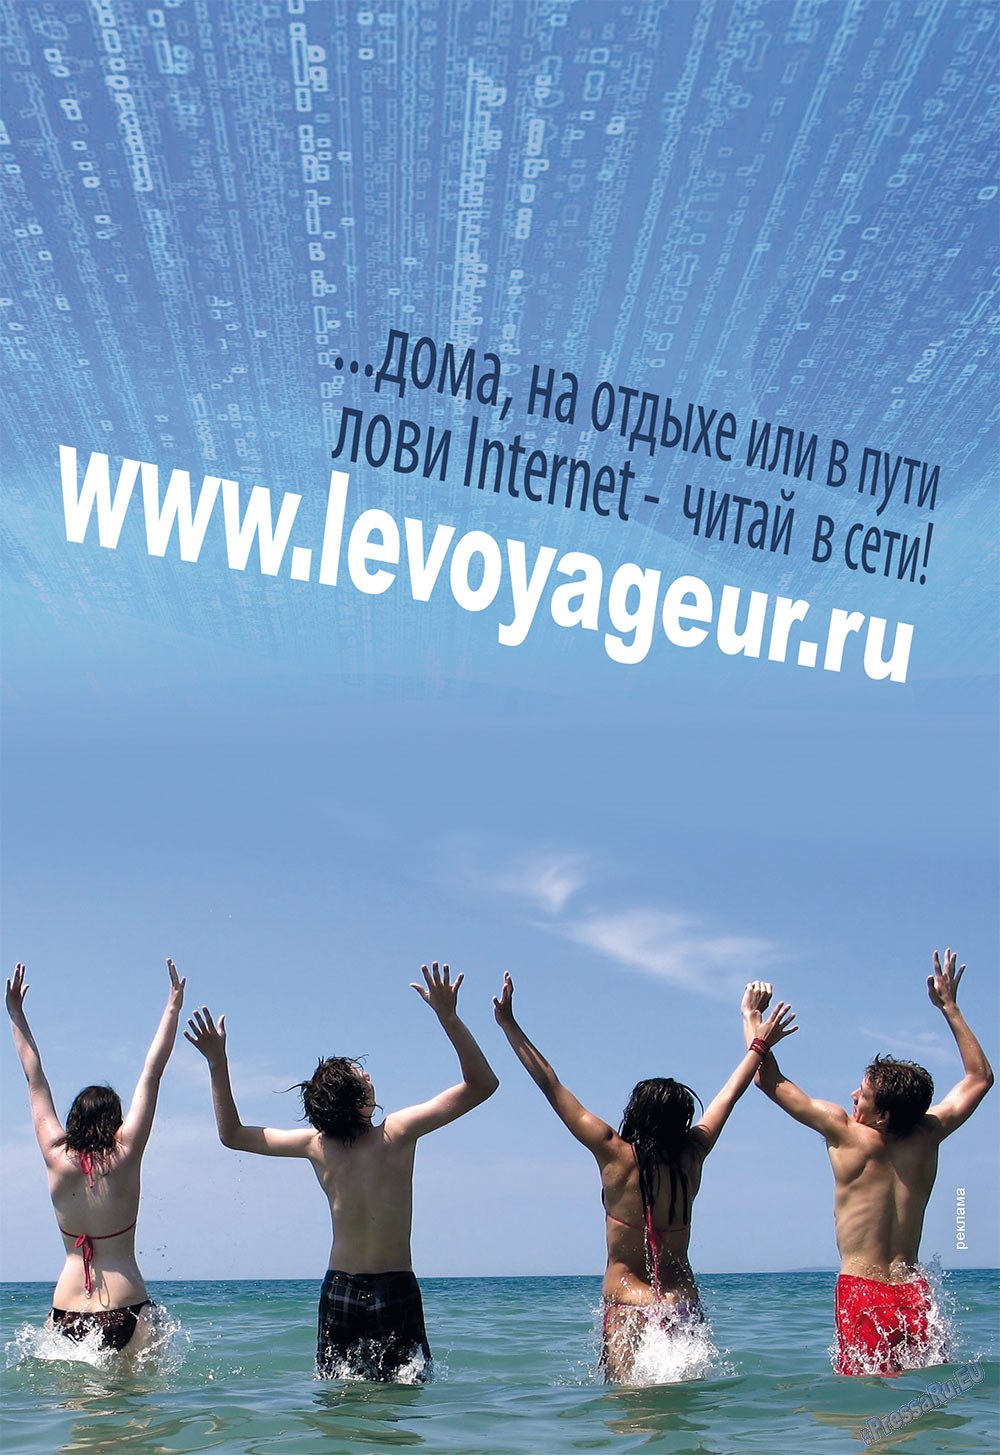 Le Voyageur (Zeitschrift). 2011 Jahr, Ausgabe 15, Seite 60